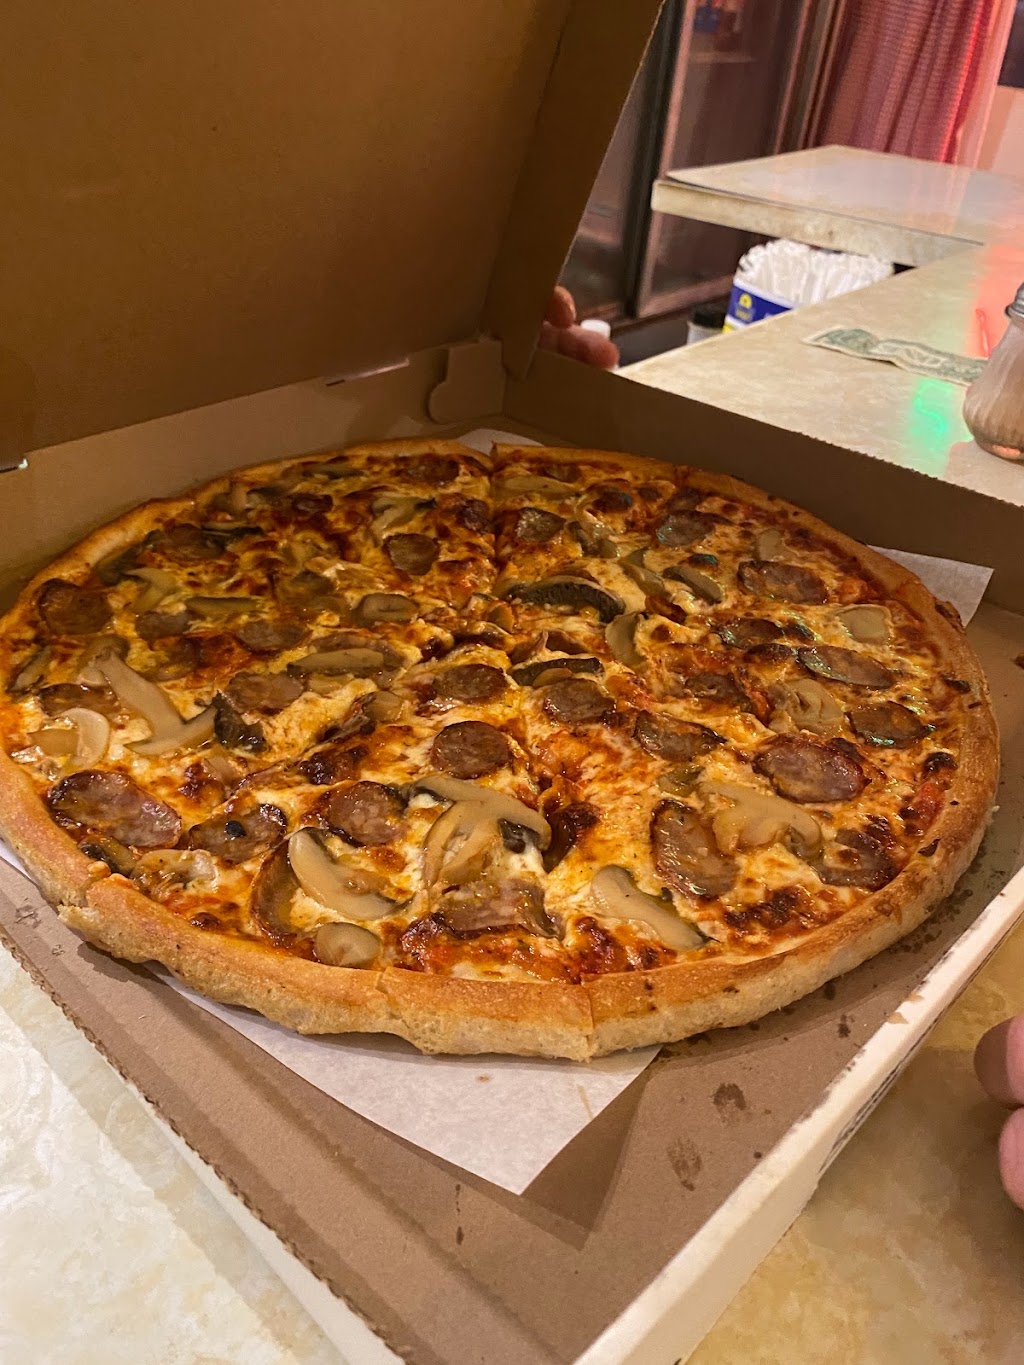 Jimmys Pizza | 822 Mamaroneck Ave, Mamaroneck, NY 10543 | Phone: (914) 698-5804